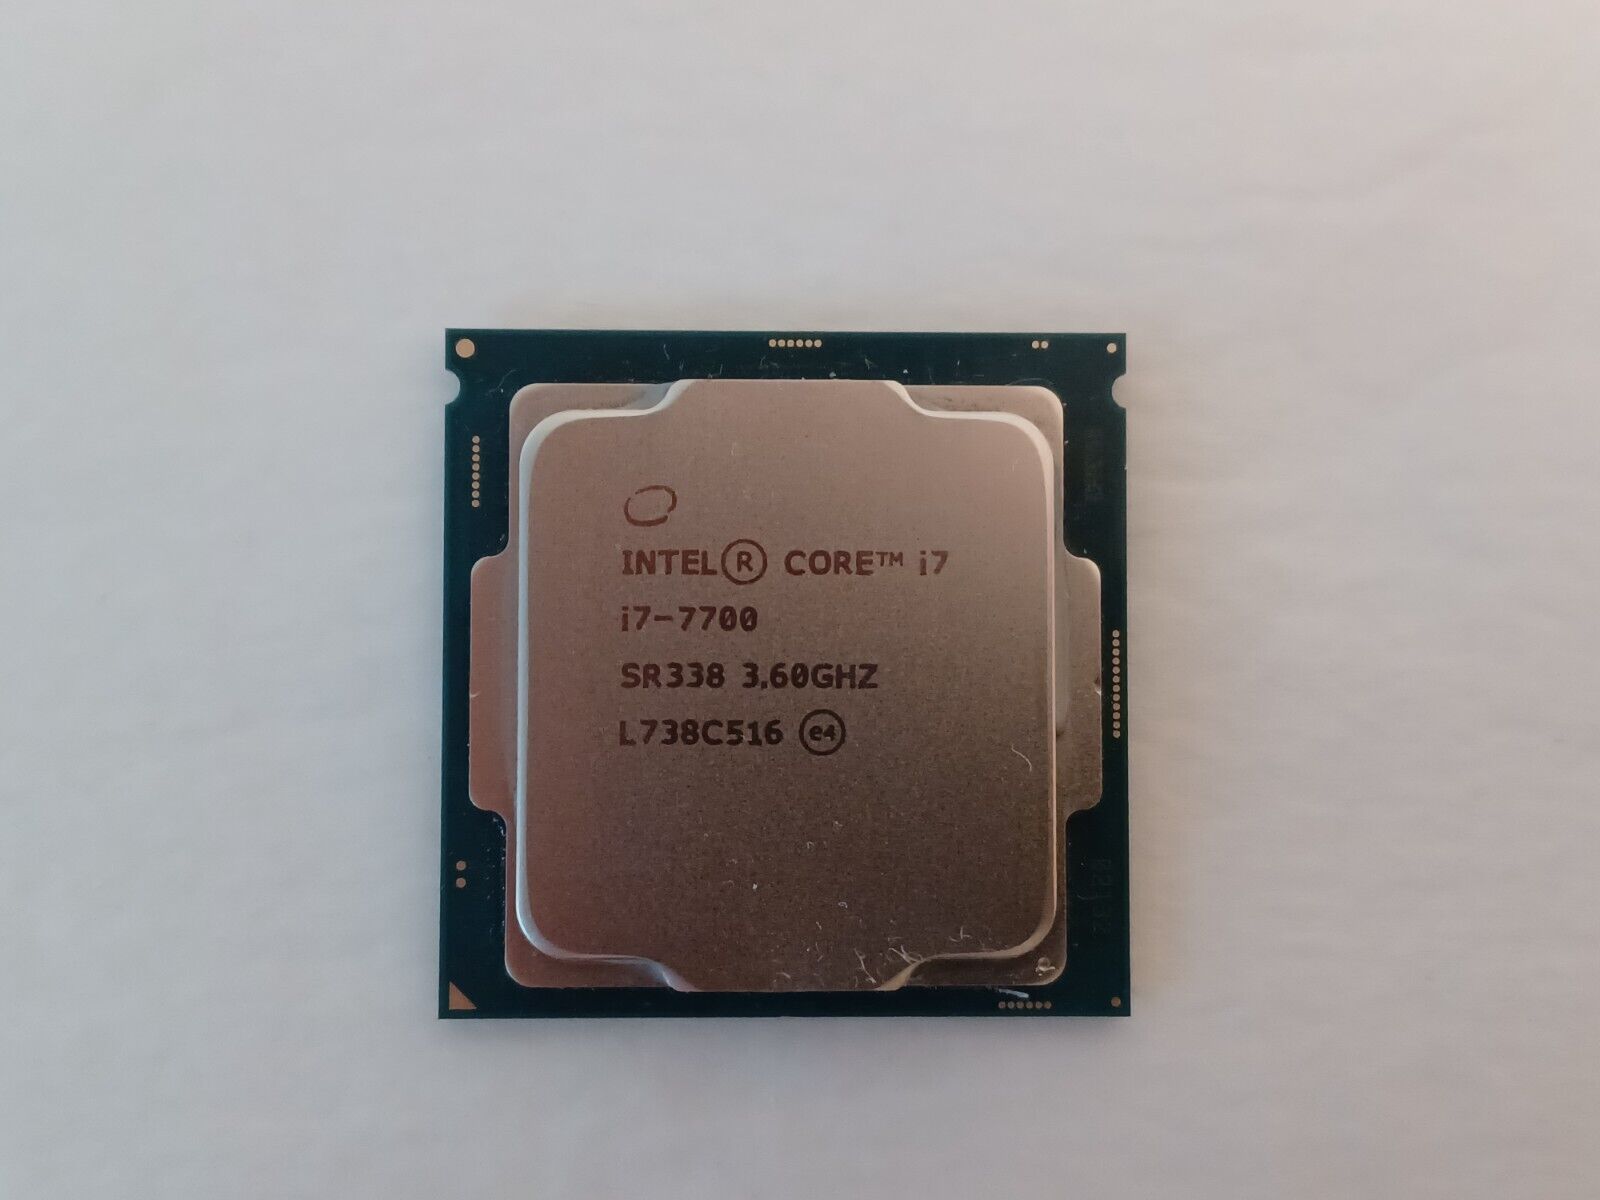 Intel Core i7-7700 3.6 GHz Quad-Core CPU Desktop Processor LGA 1151 SR338